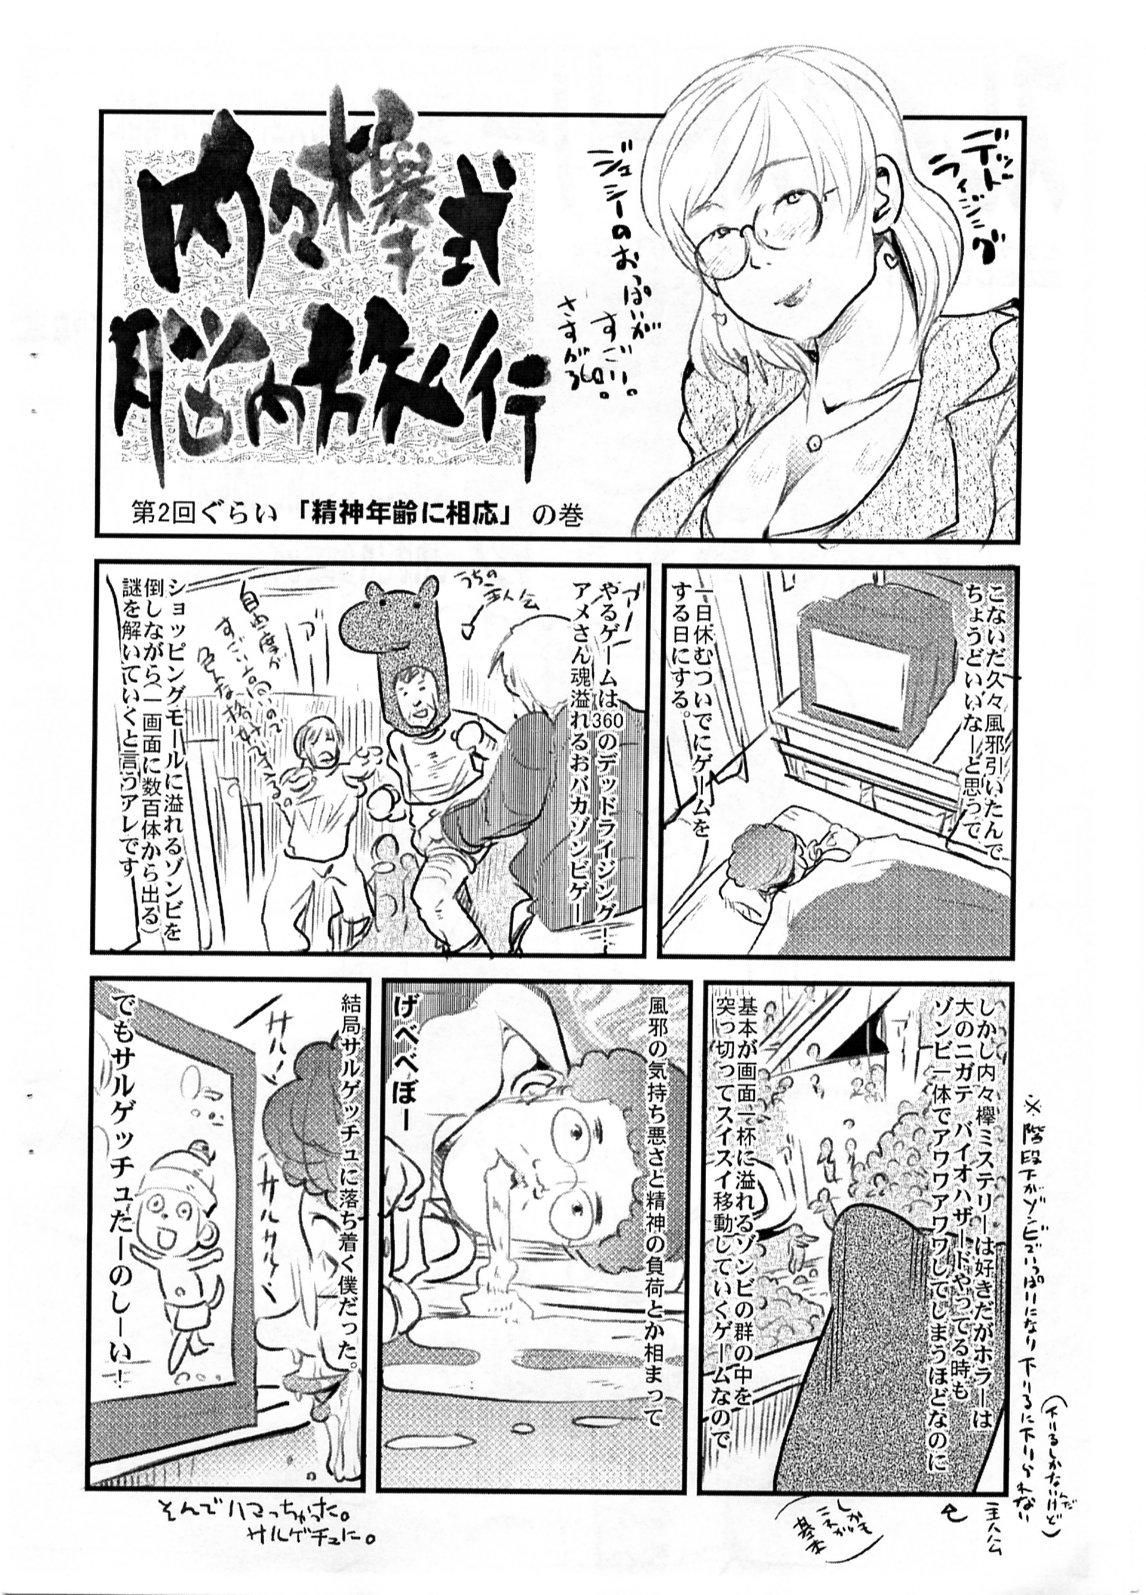 Fucked Yaseiji ni iroiro oshieru hon nano da - Digimon savers Bigass - Page 11